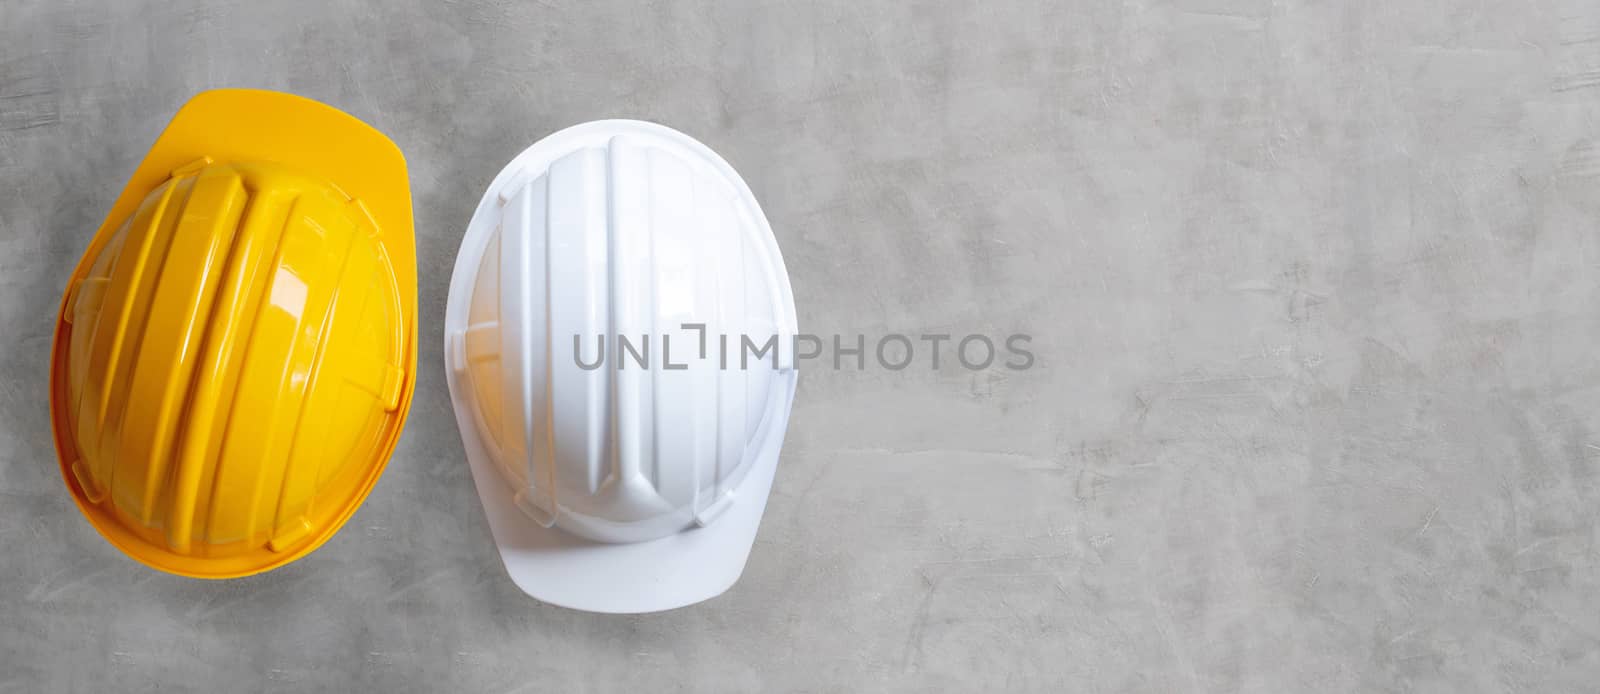 Construction helmets on concrete background. Copy space